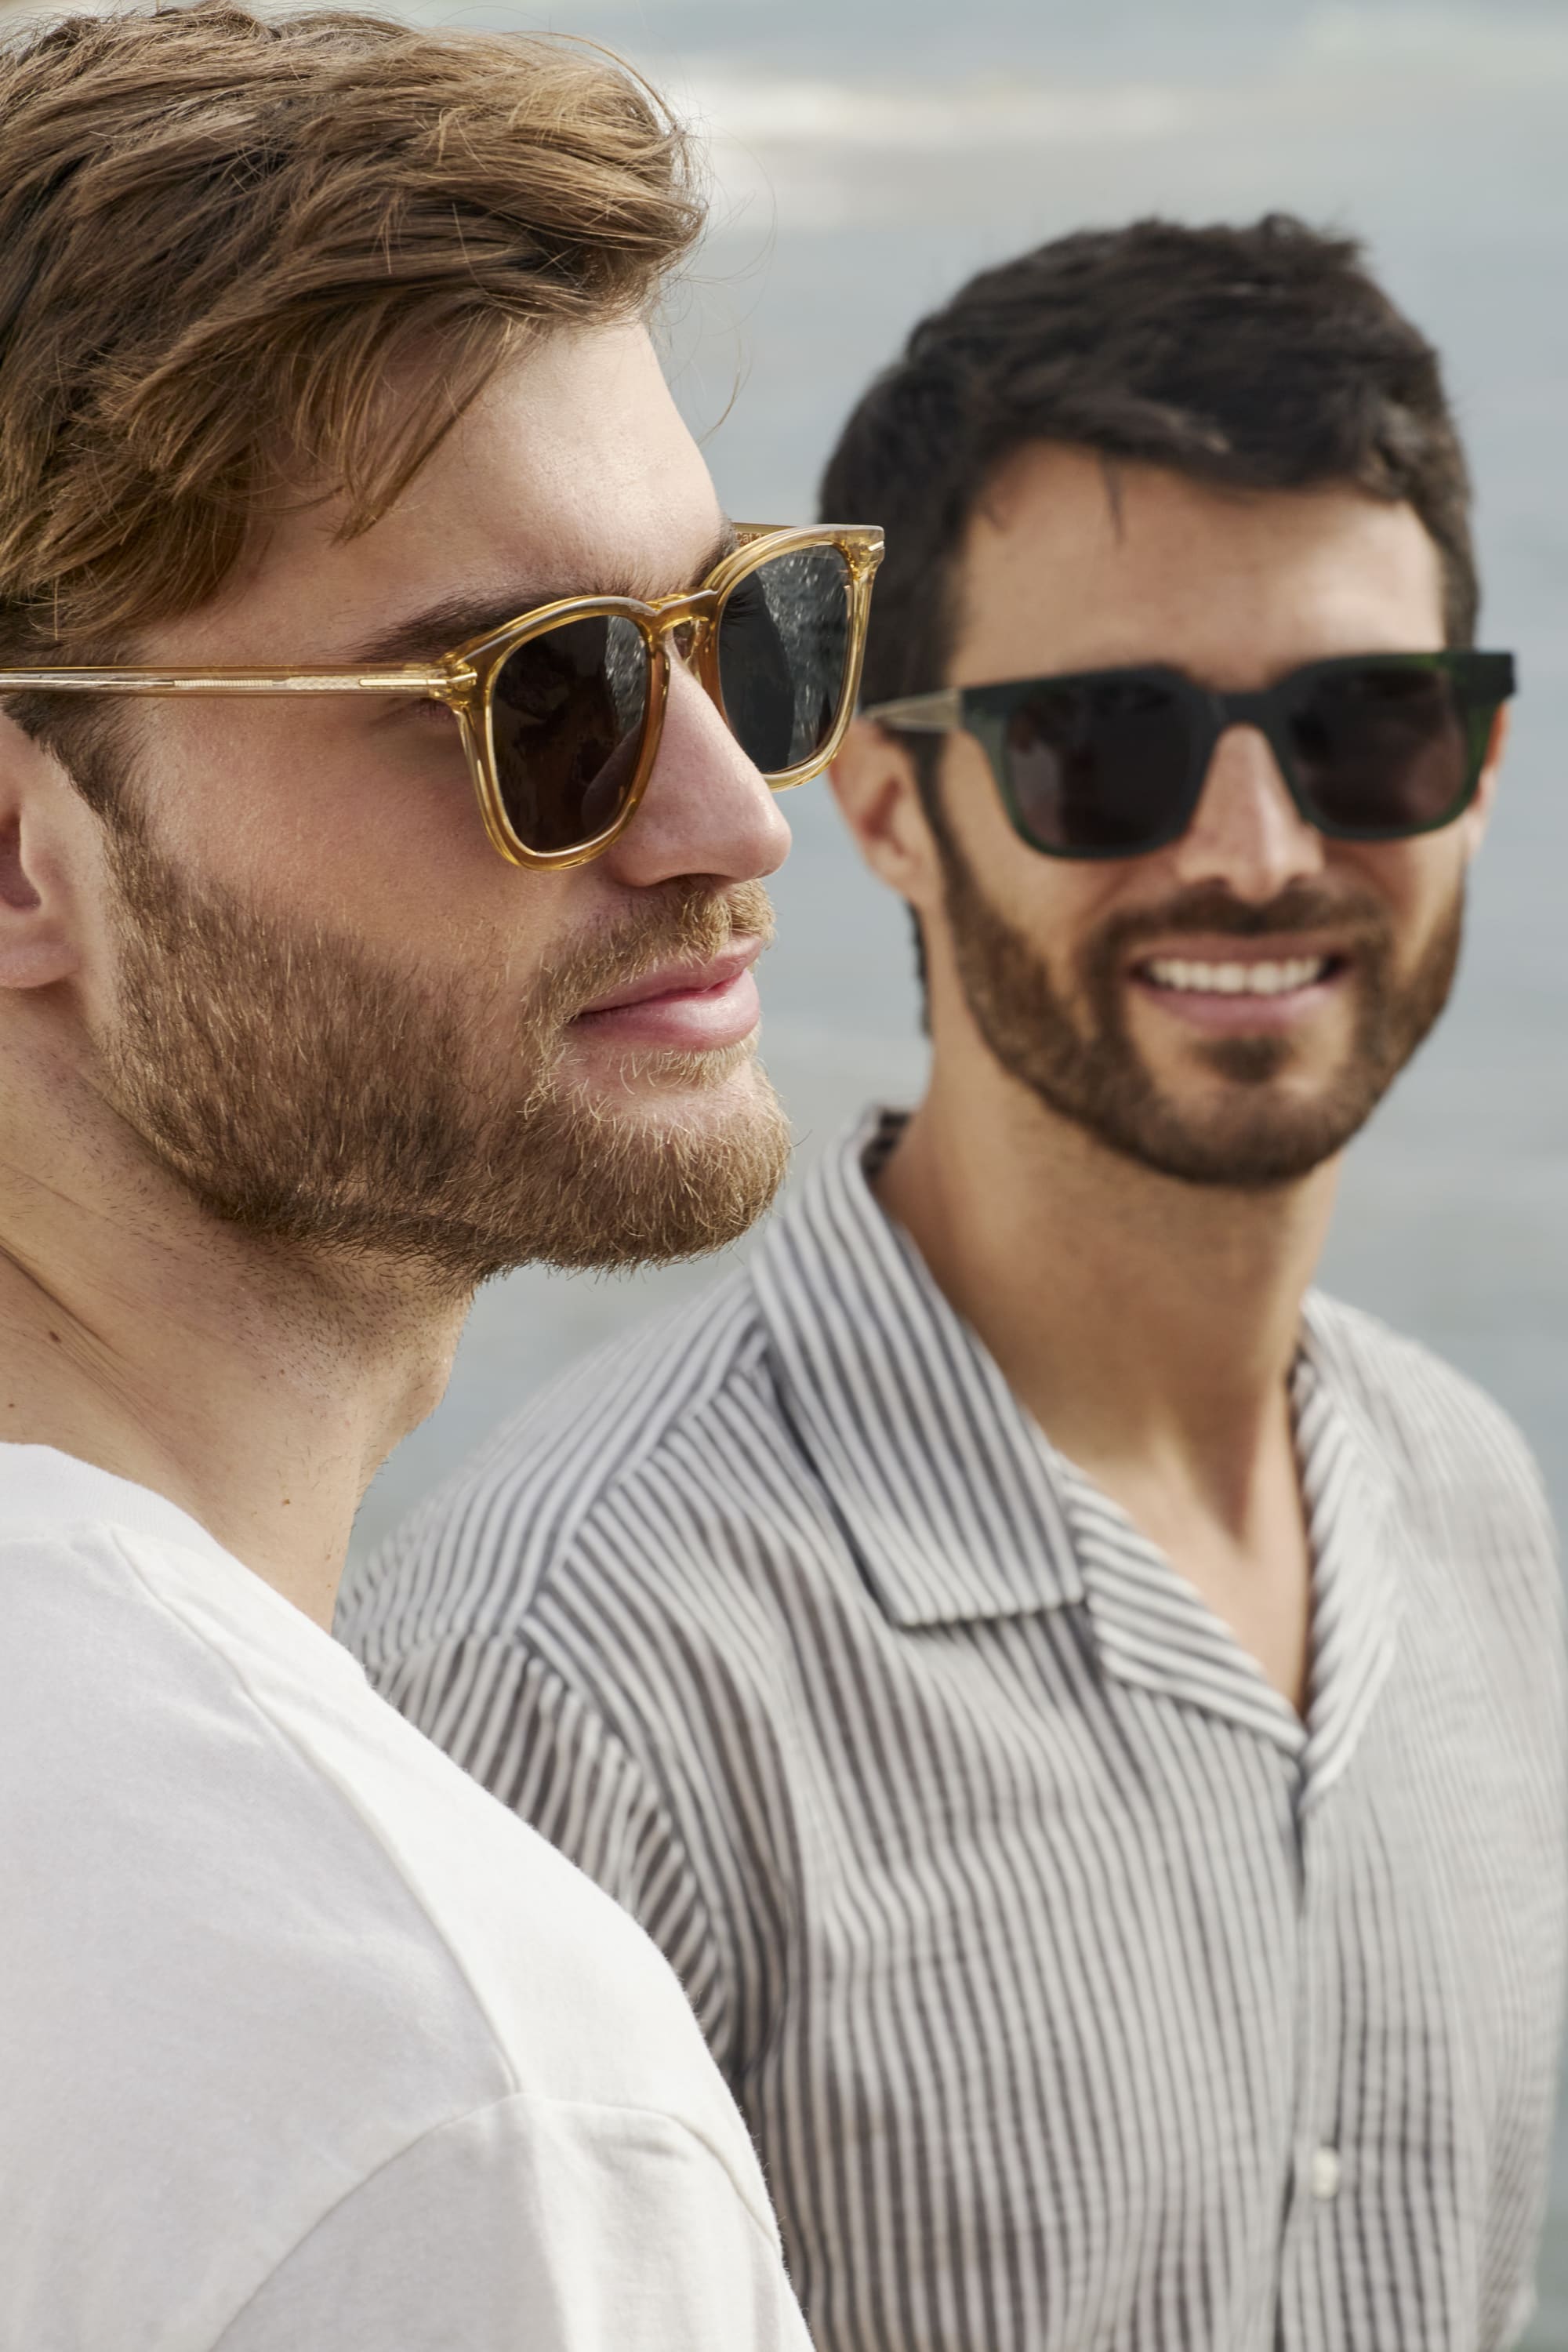 Två män med solglasögon, en med gula och en med svarta.